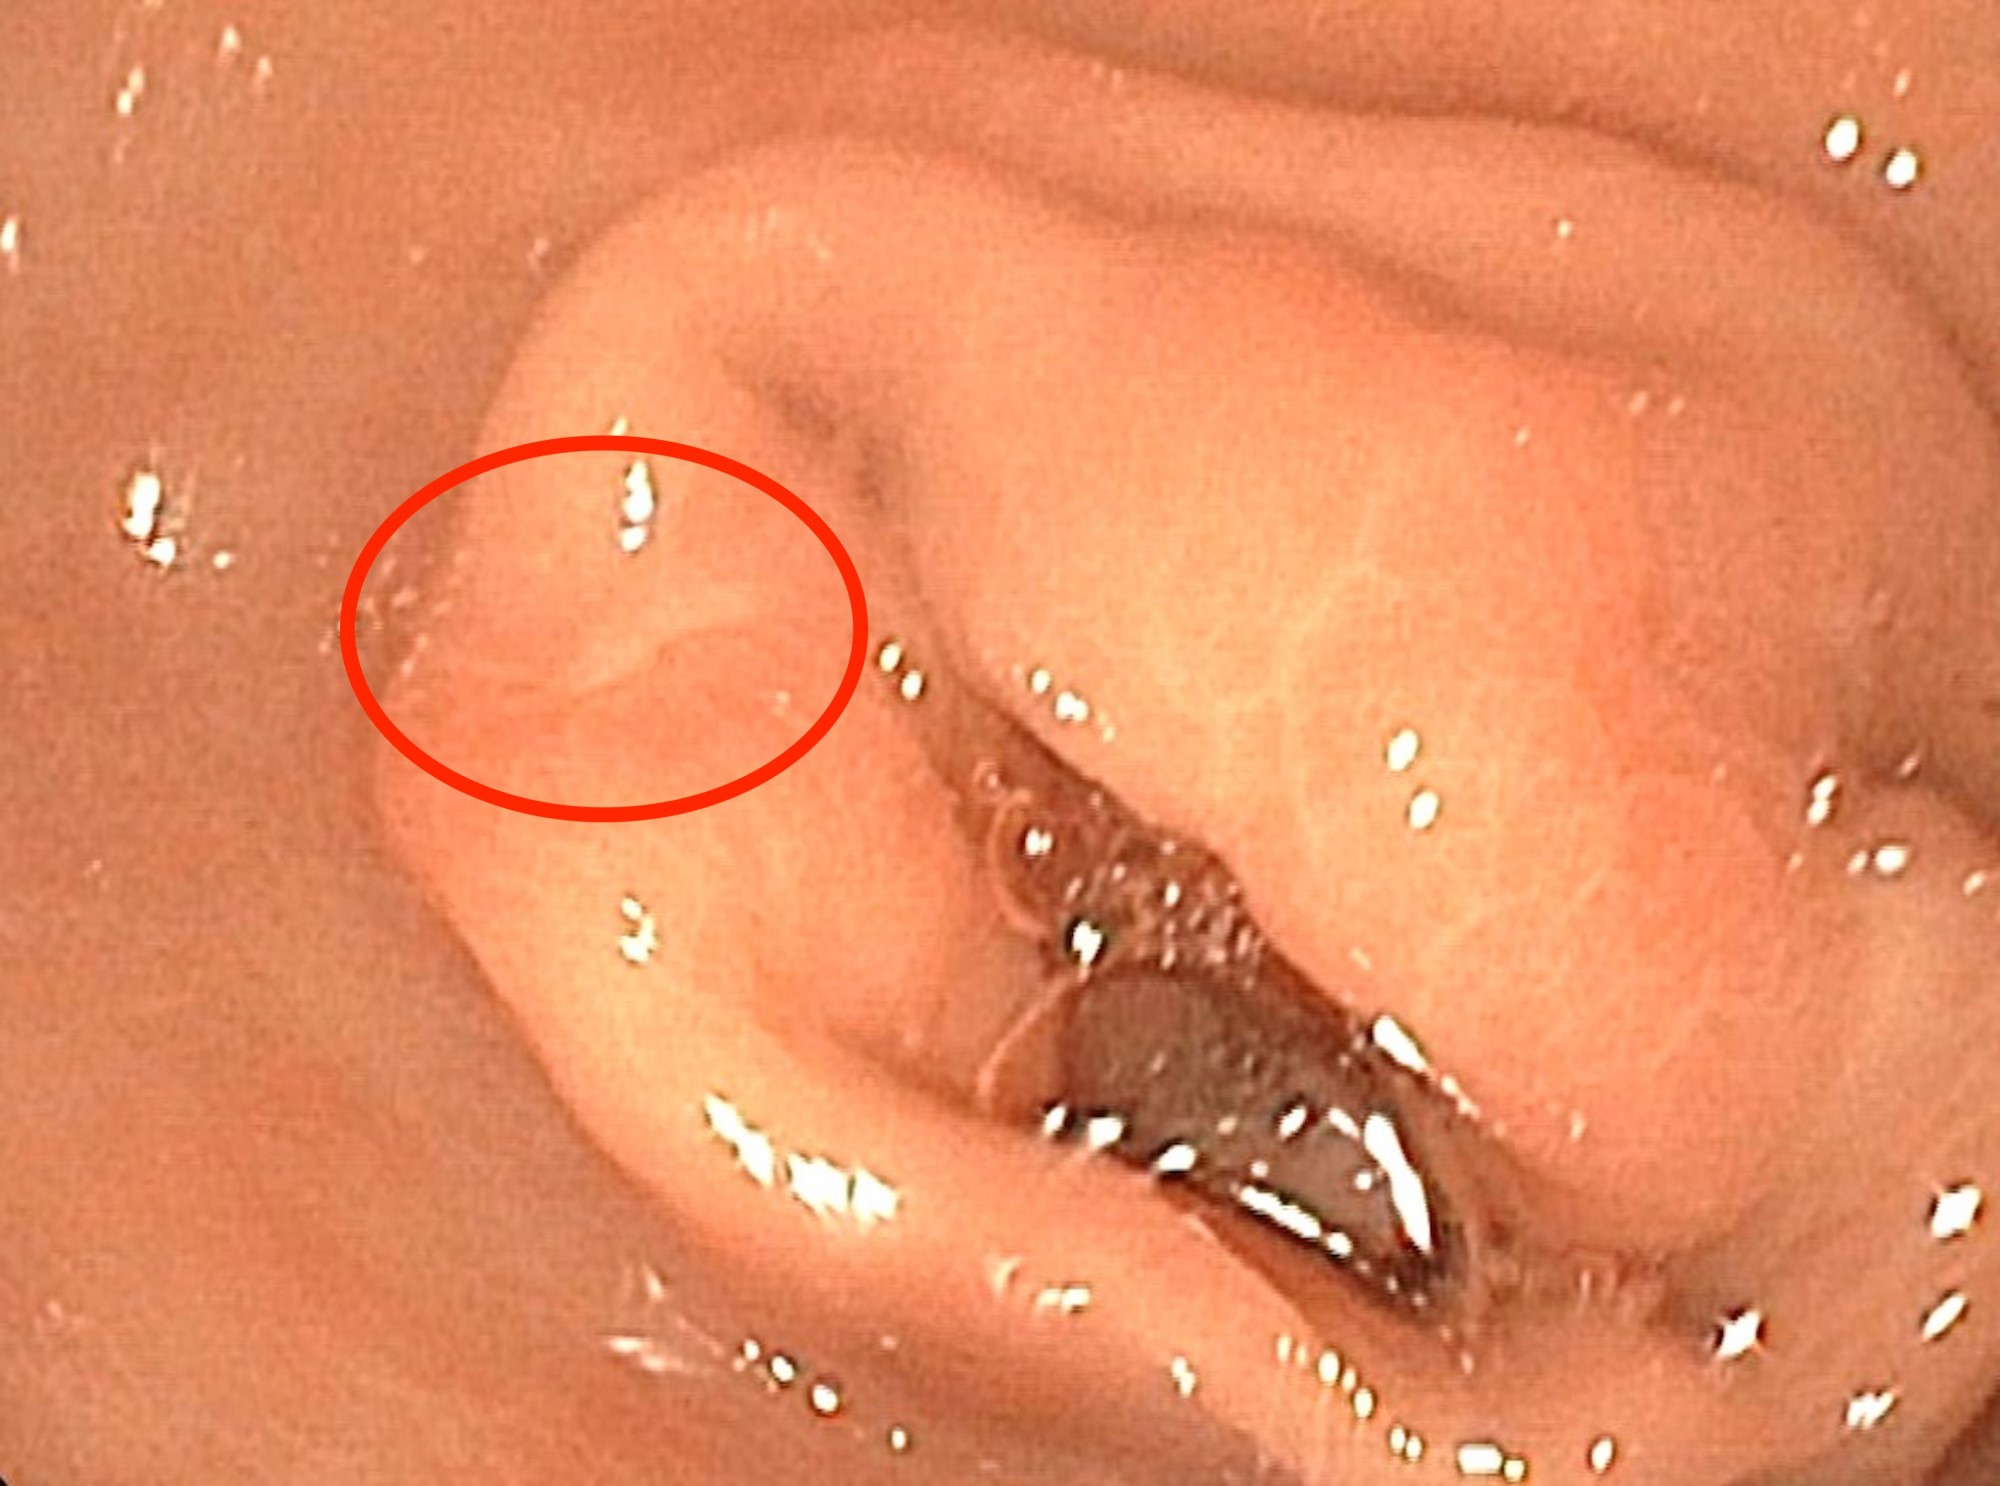 Endoscopy, subtle ectopic pancreas